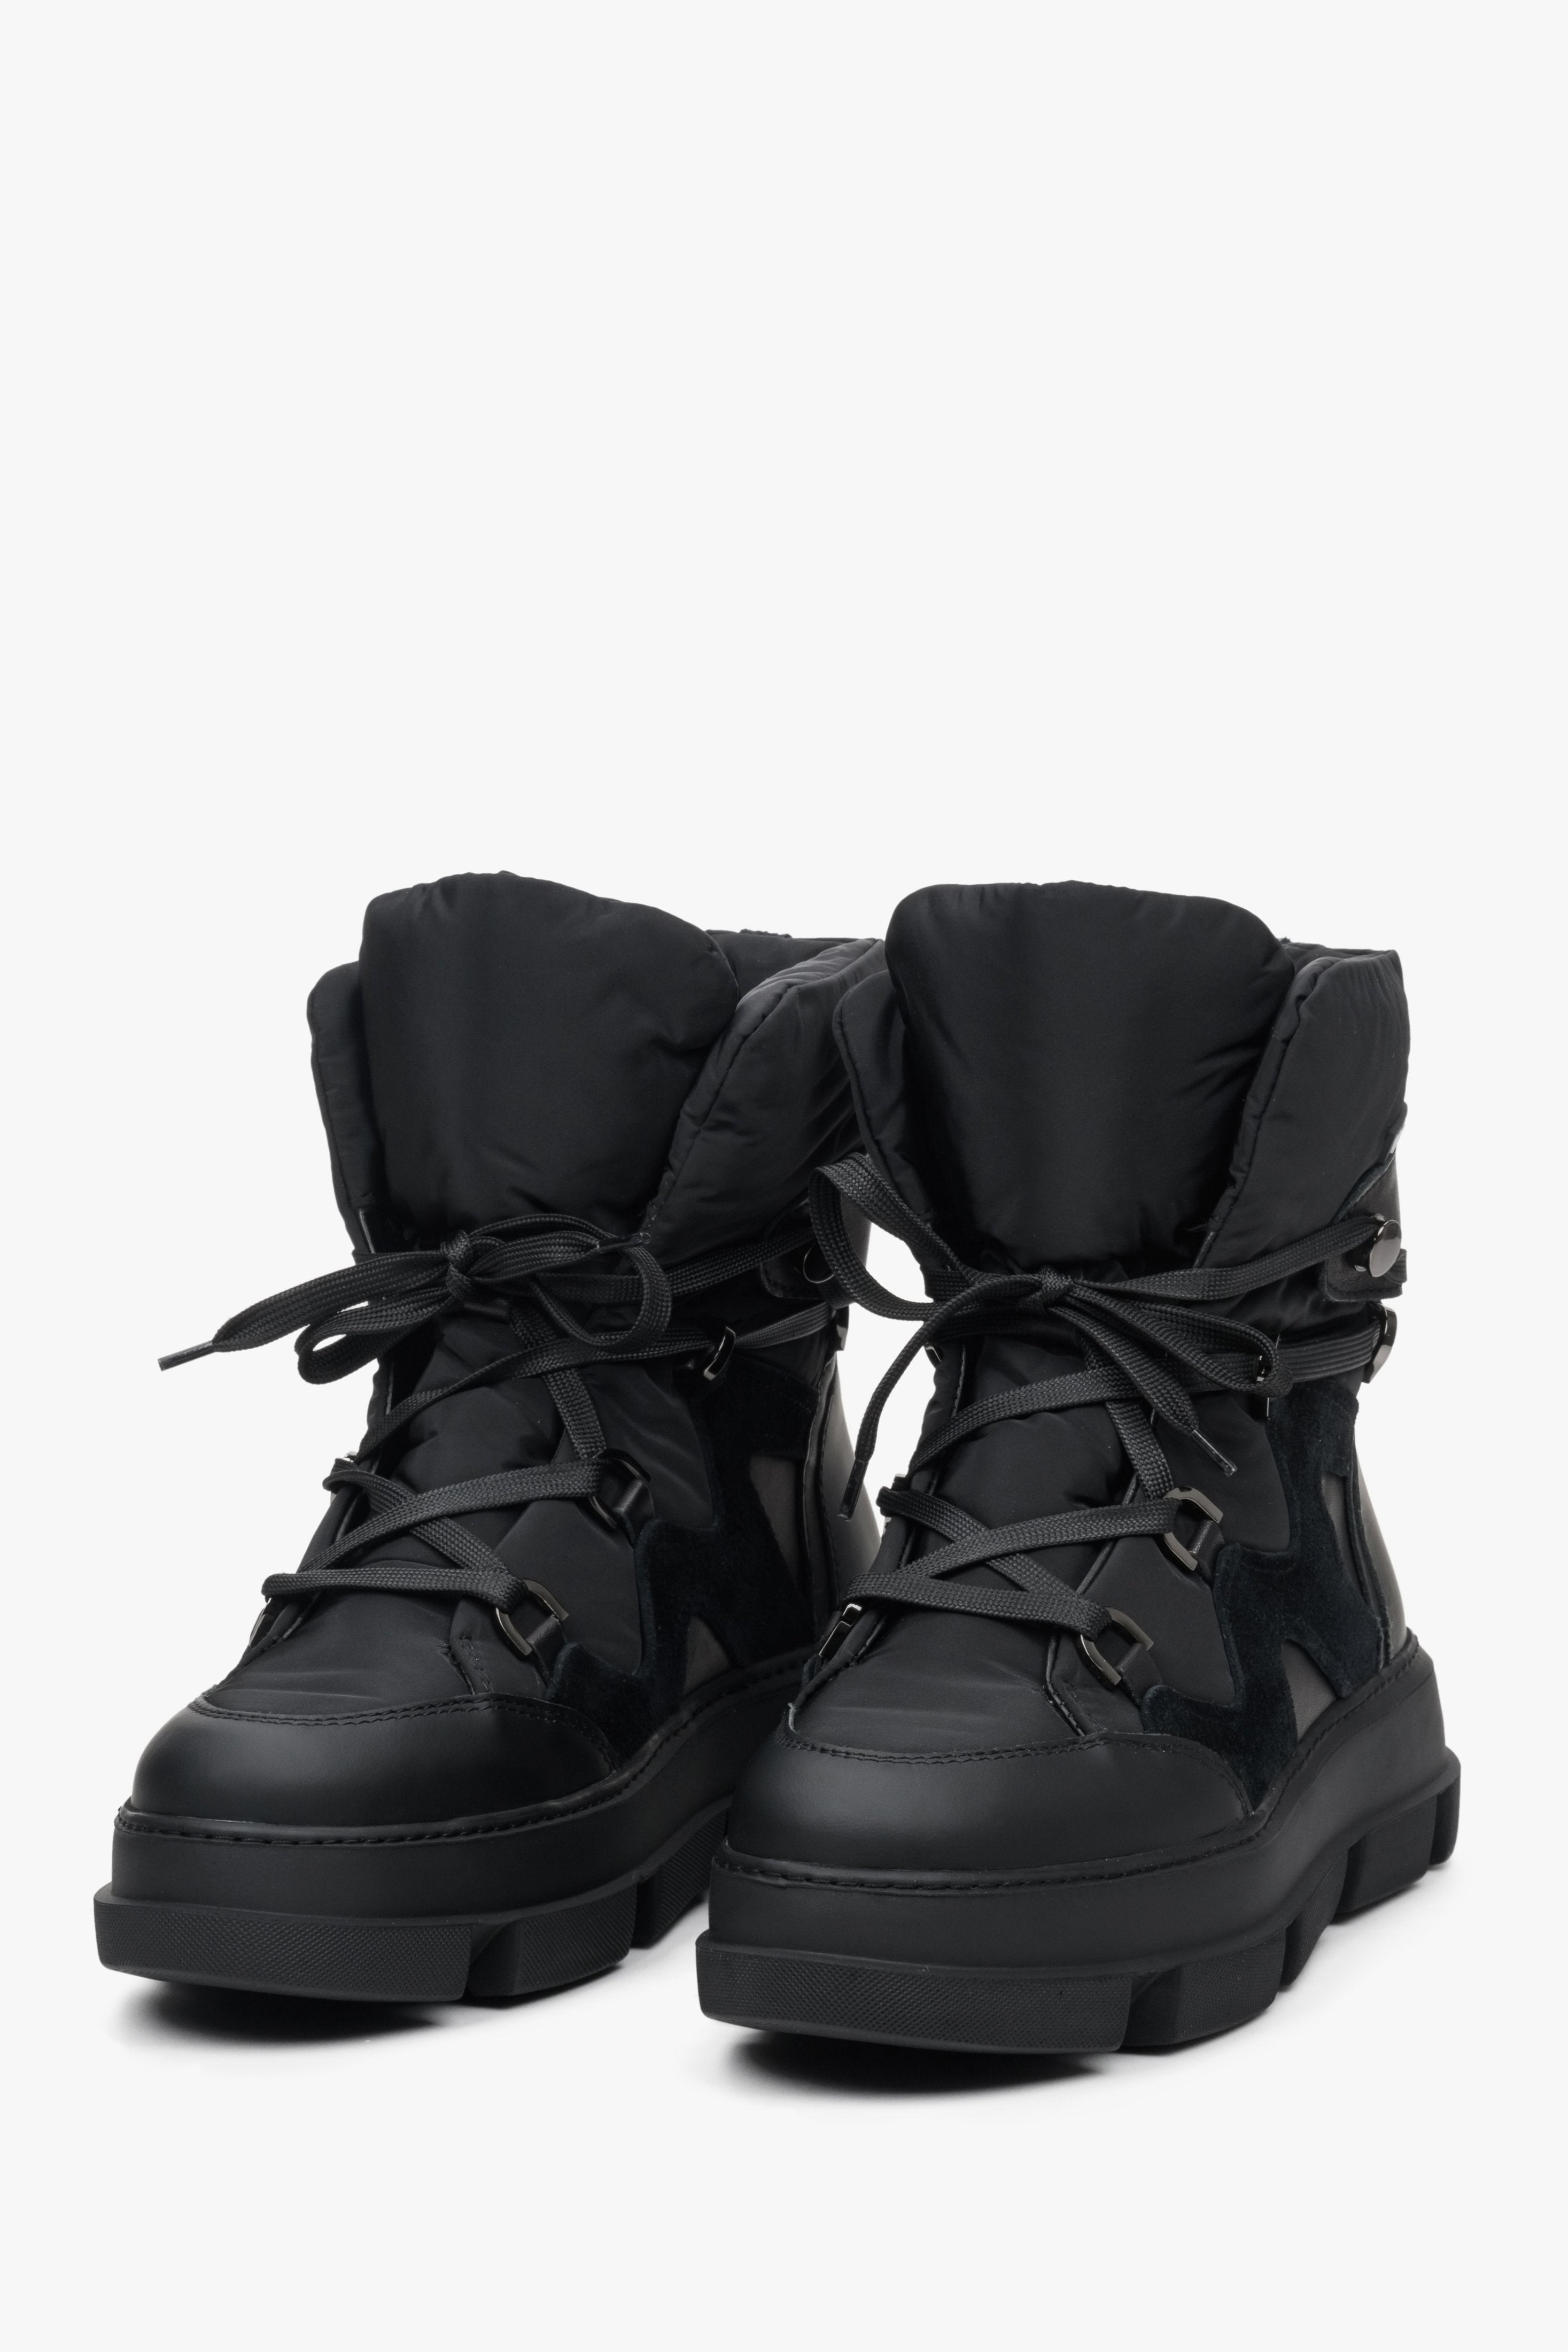 Damskie botki zimowe Estro w kolorze czarnym - zbliżenie na przód buta i system sznurowań.